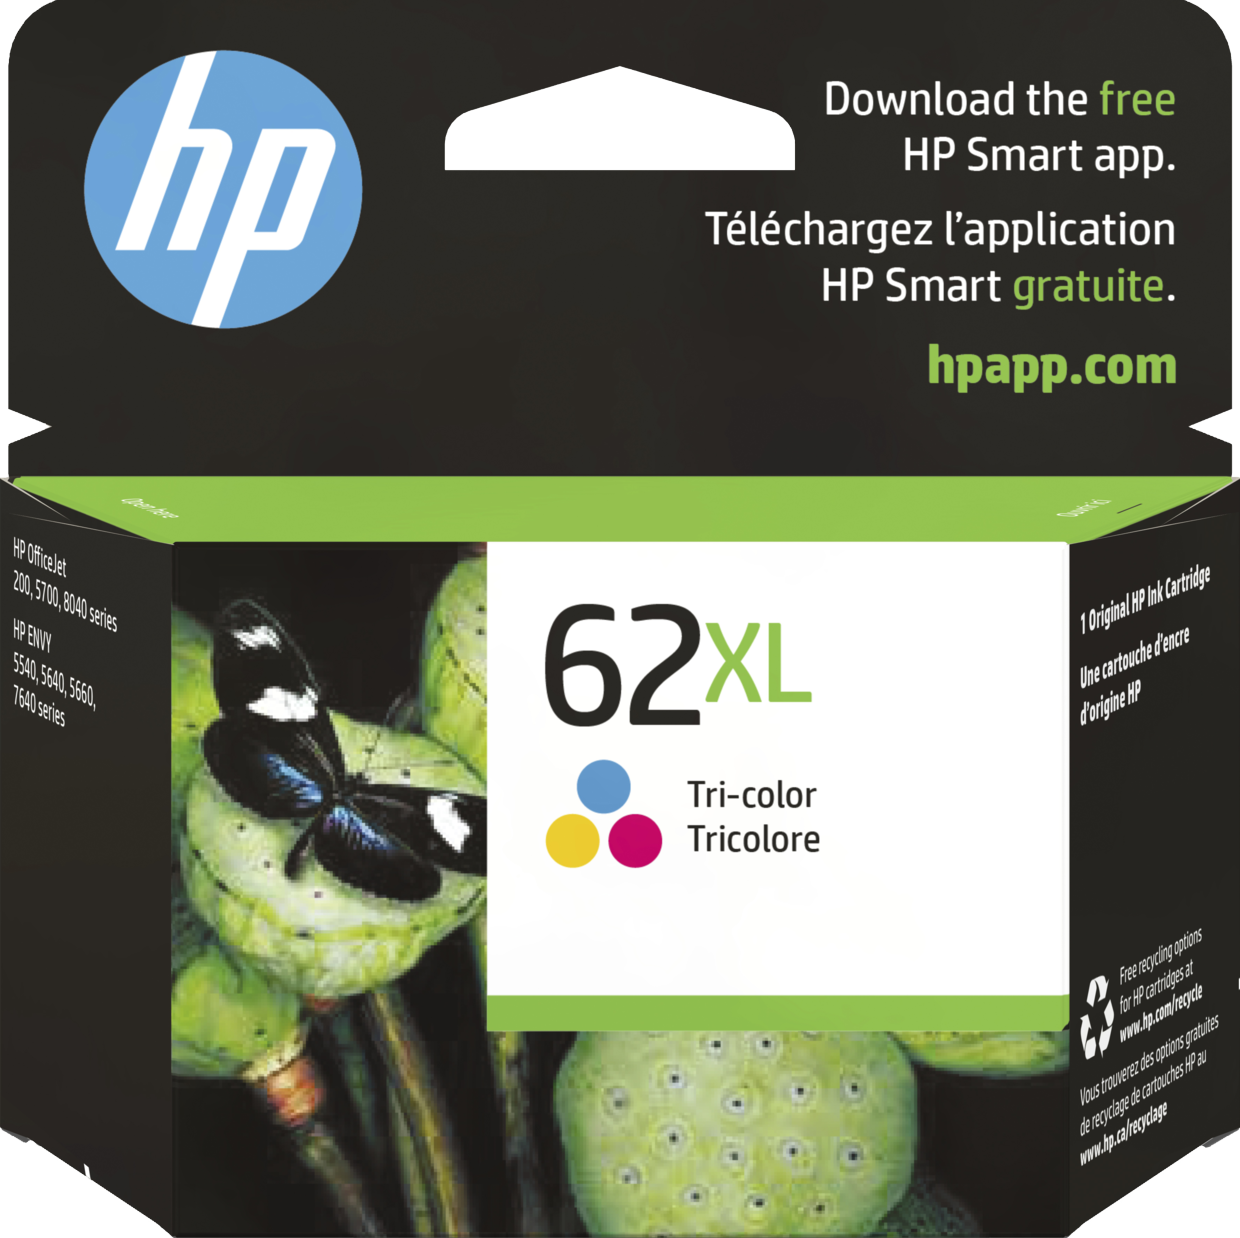 62XL HP High Capacity Colour Cartridge